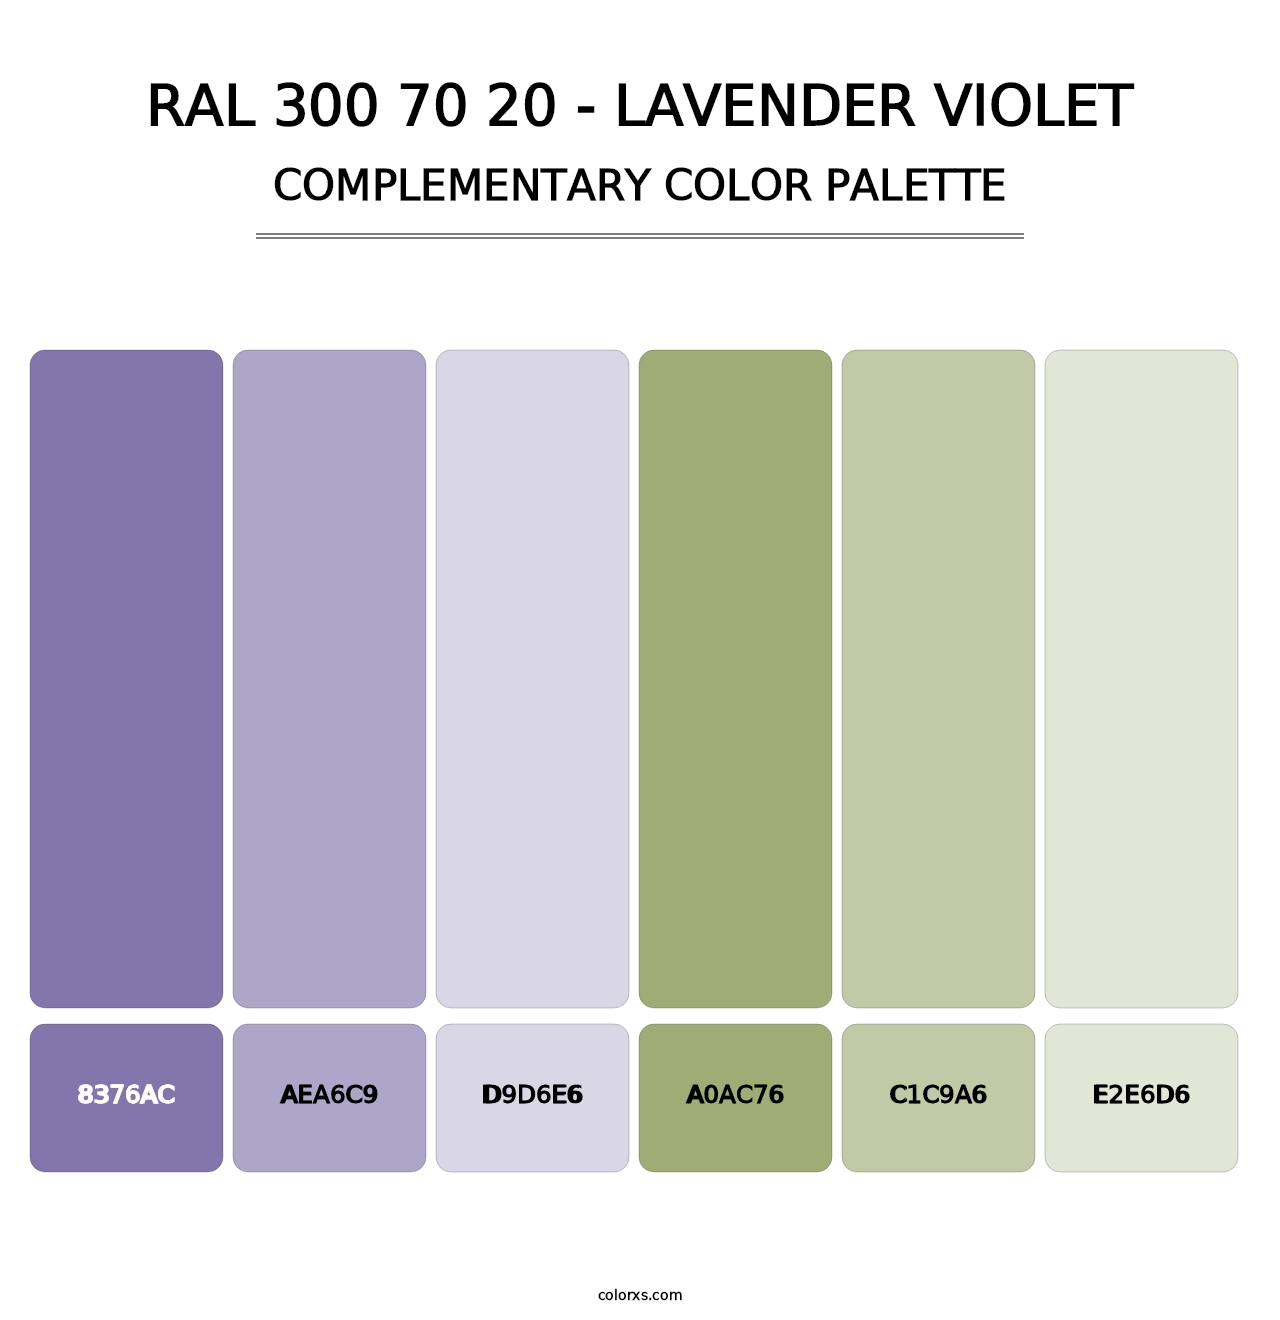 RAL 300 70 20 - Lavender Violet - Complementary Color Palette